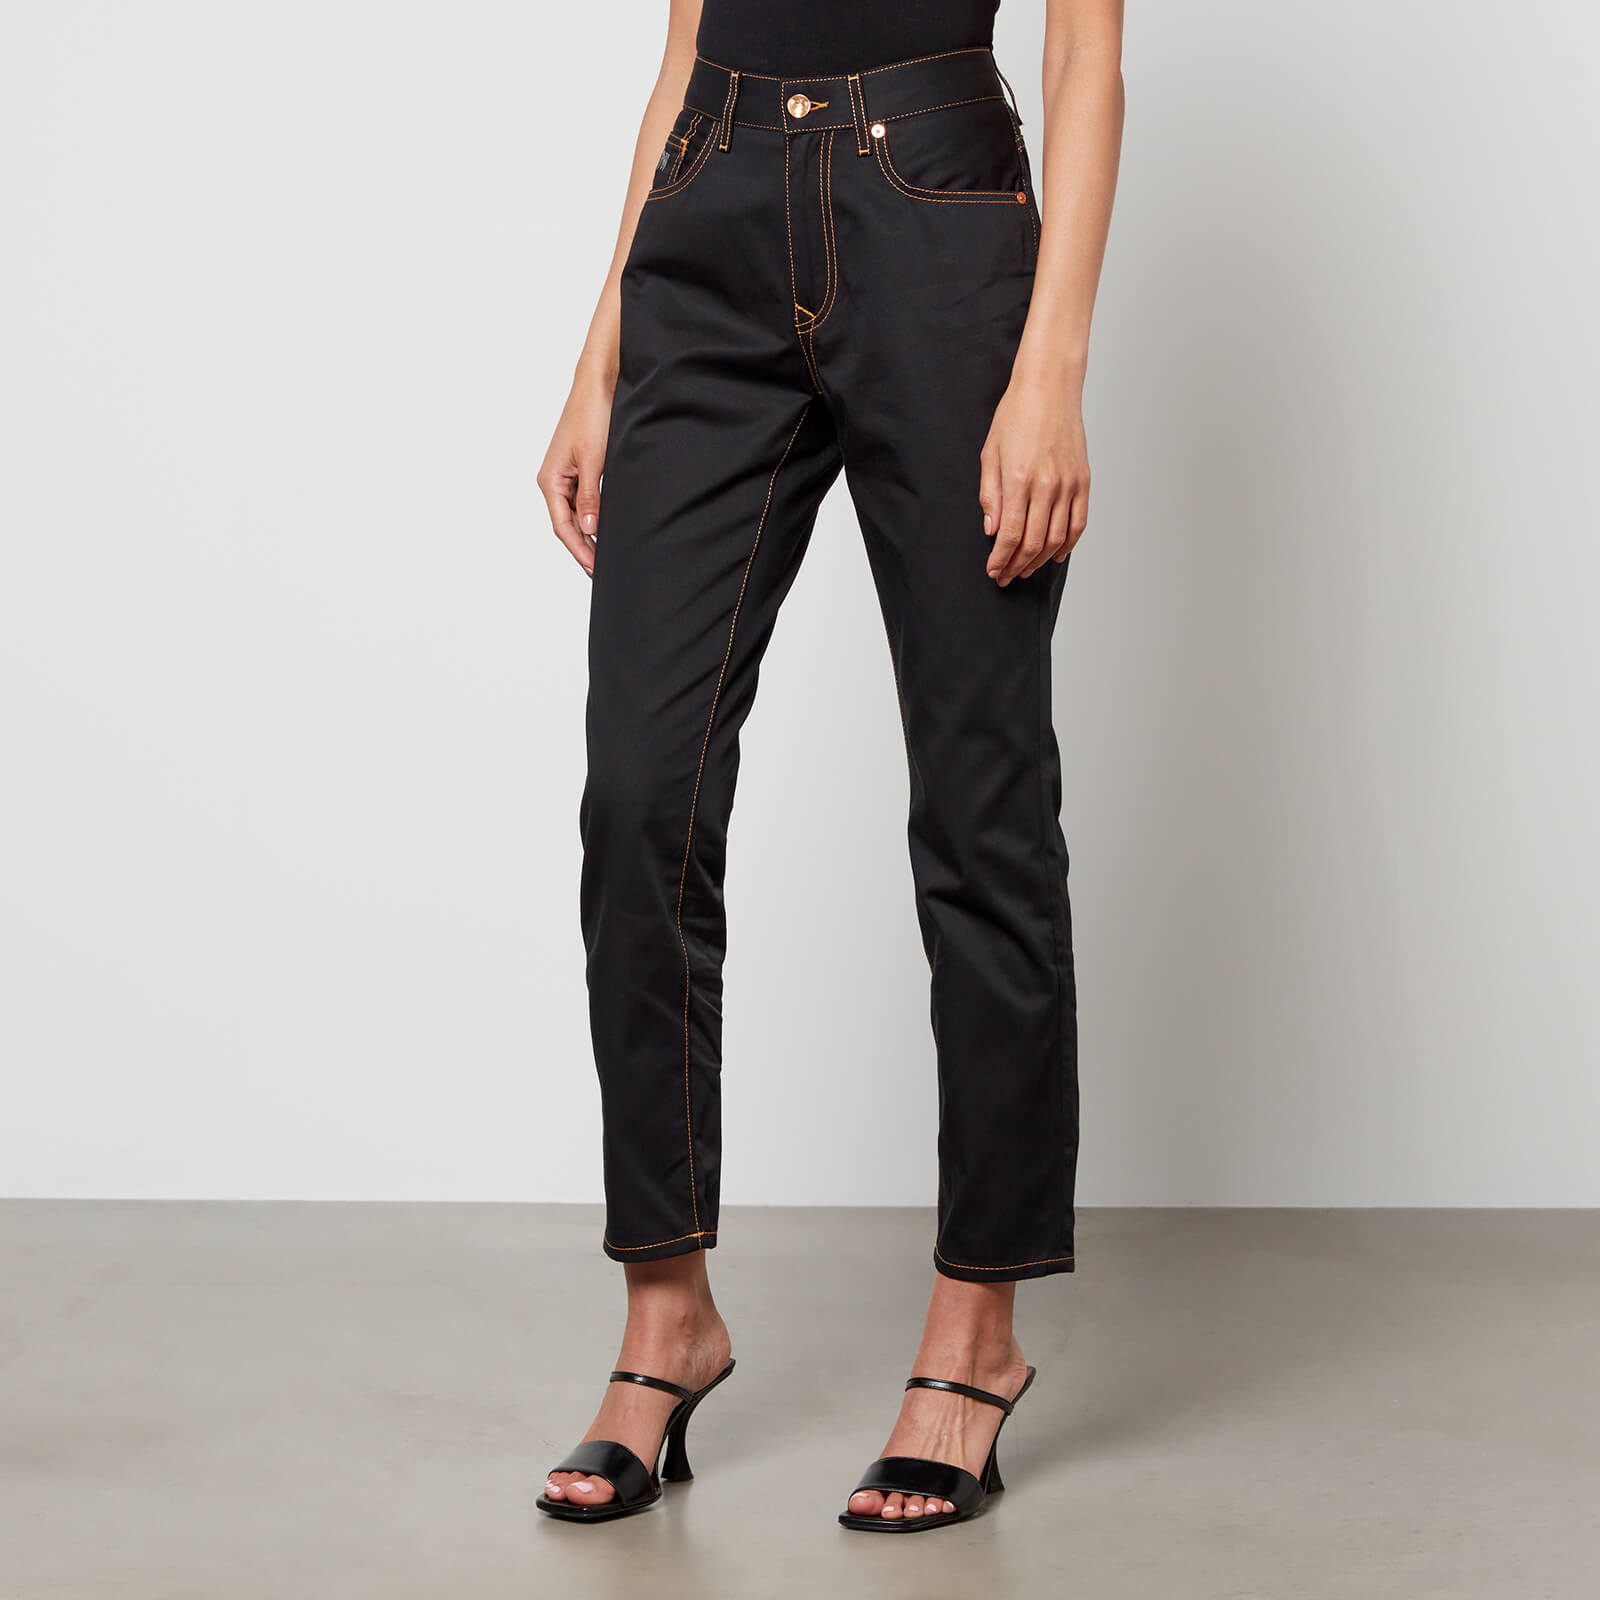 Vivienne Westwood Women's Harris Jeans - Black - W27